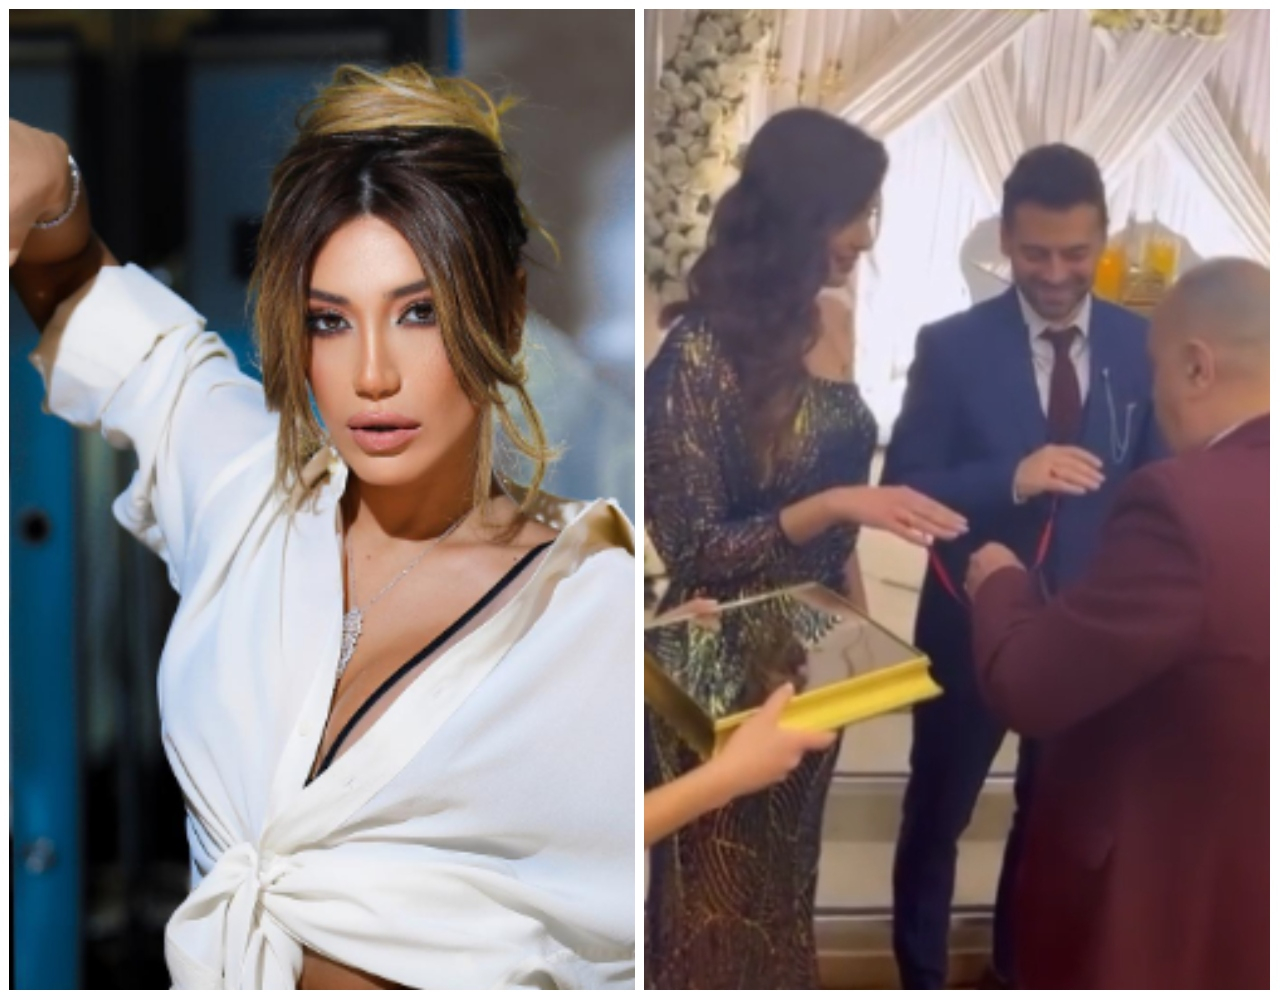 Röya qardaşının türkiyəli nişanlısından danışdı: "8 ildir gəlinimizdir" - VİDEO